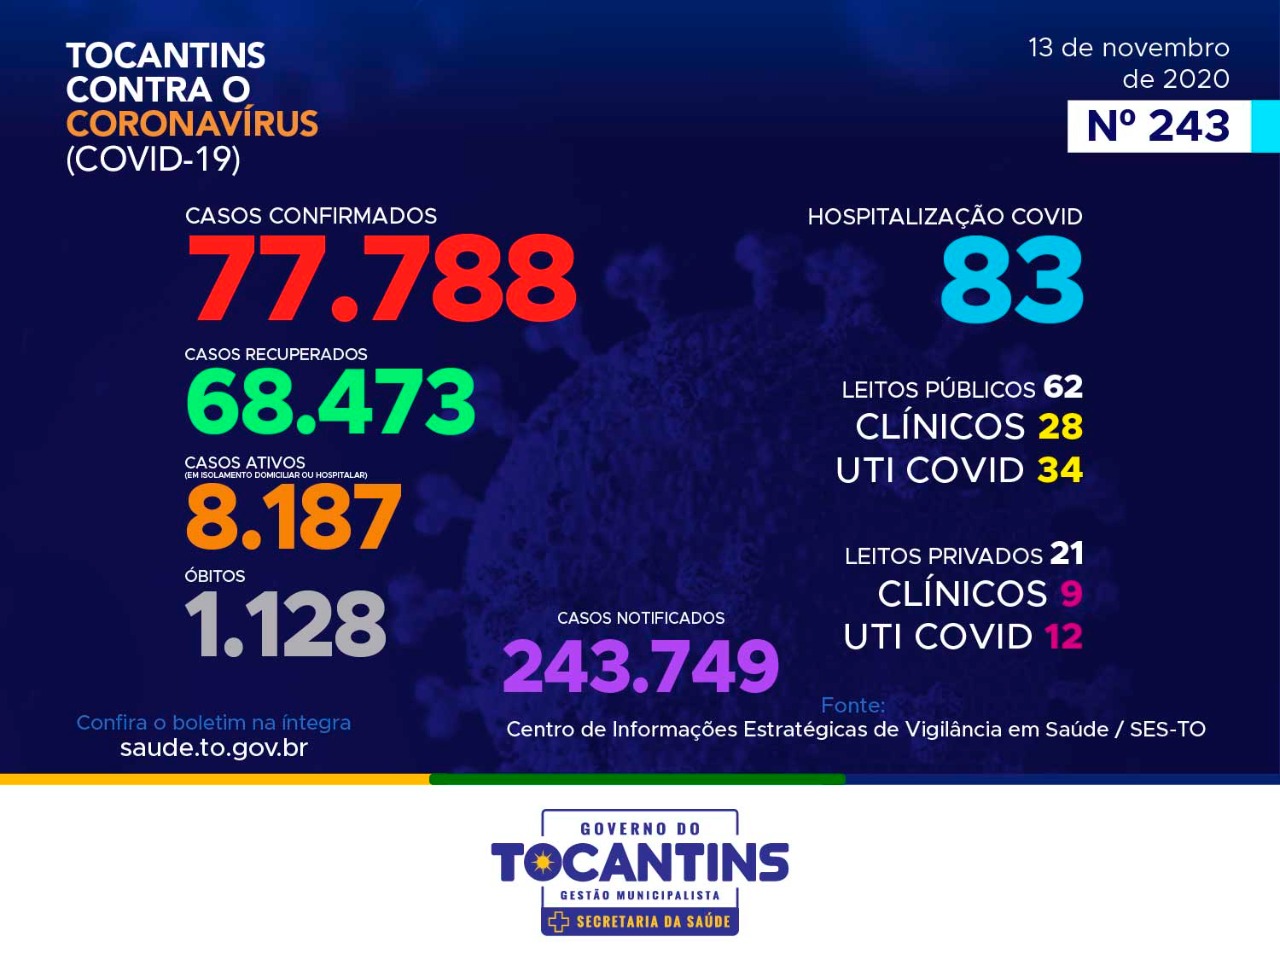 Coronavírus: Tocantins confirma 269 novos casos hoje, destes, 46% estão entre 20 a 39 anos